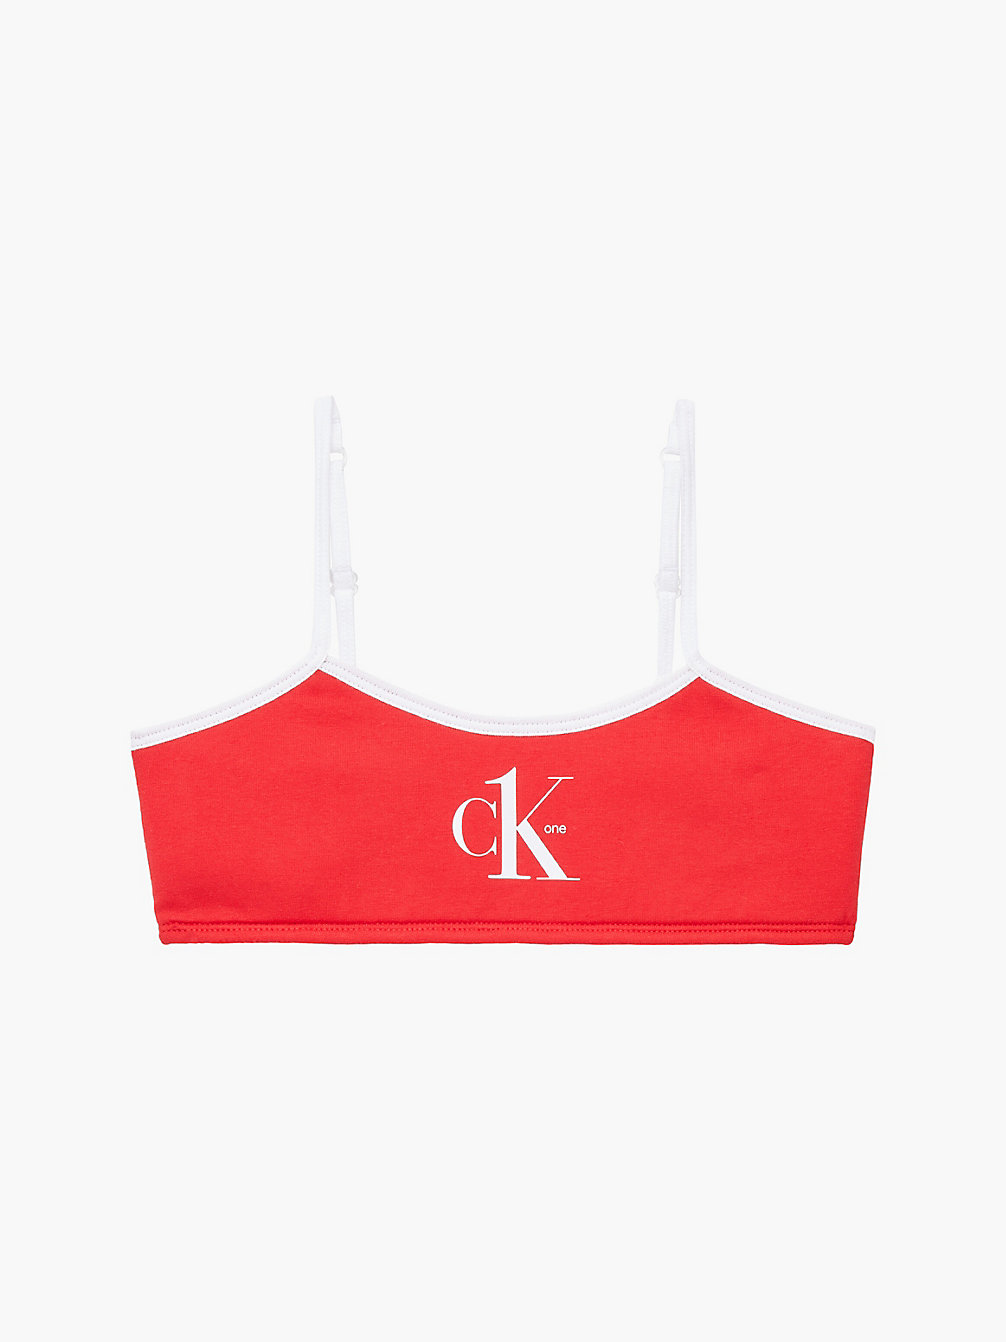 RED HOT > Meisjesbralette - CK One > undefined girls - Calvin Klein